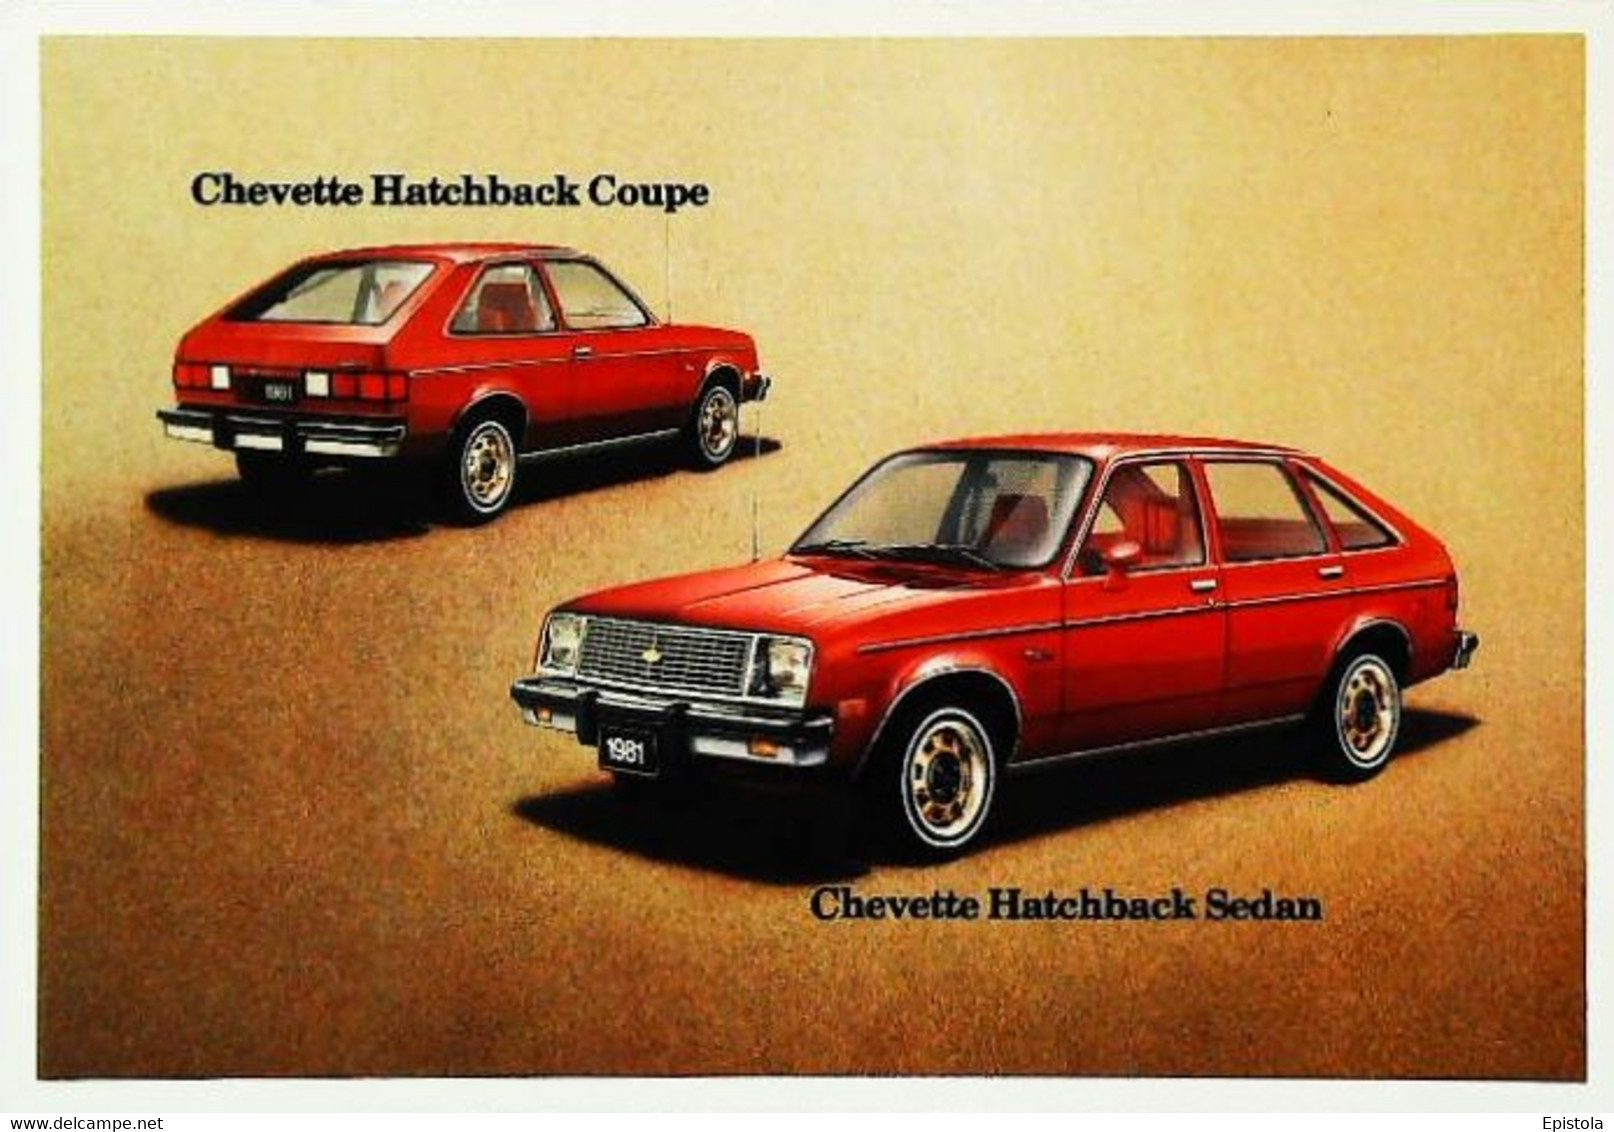 ► CHEVROLET Chevette Hatchback 1981  - Publicité Automobile Chevrolet  (Litho. U.S.A.) - American Roadside